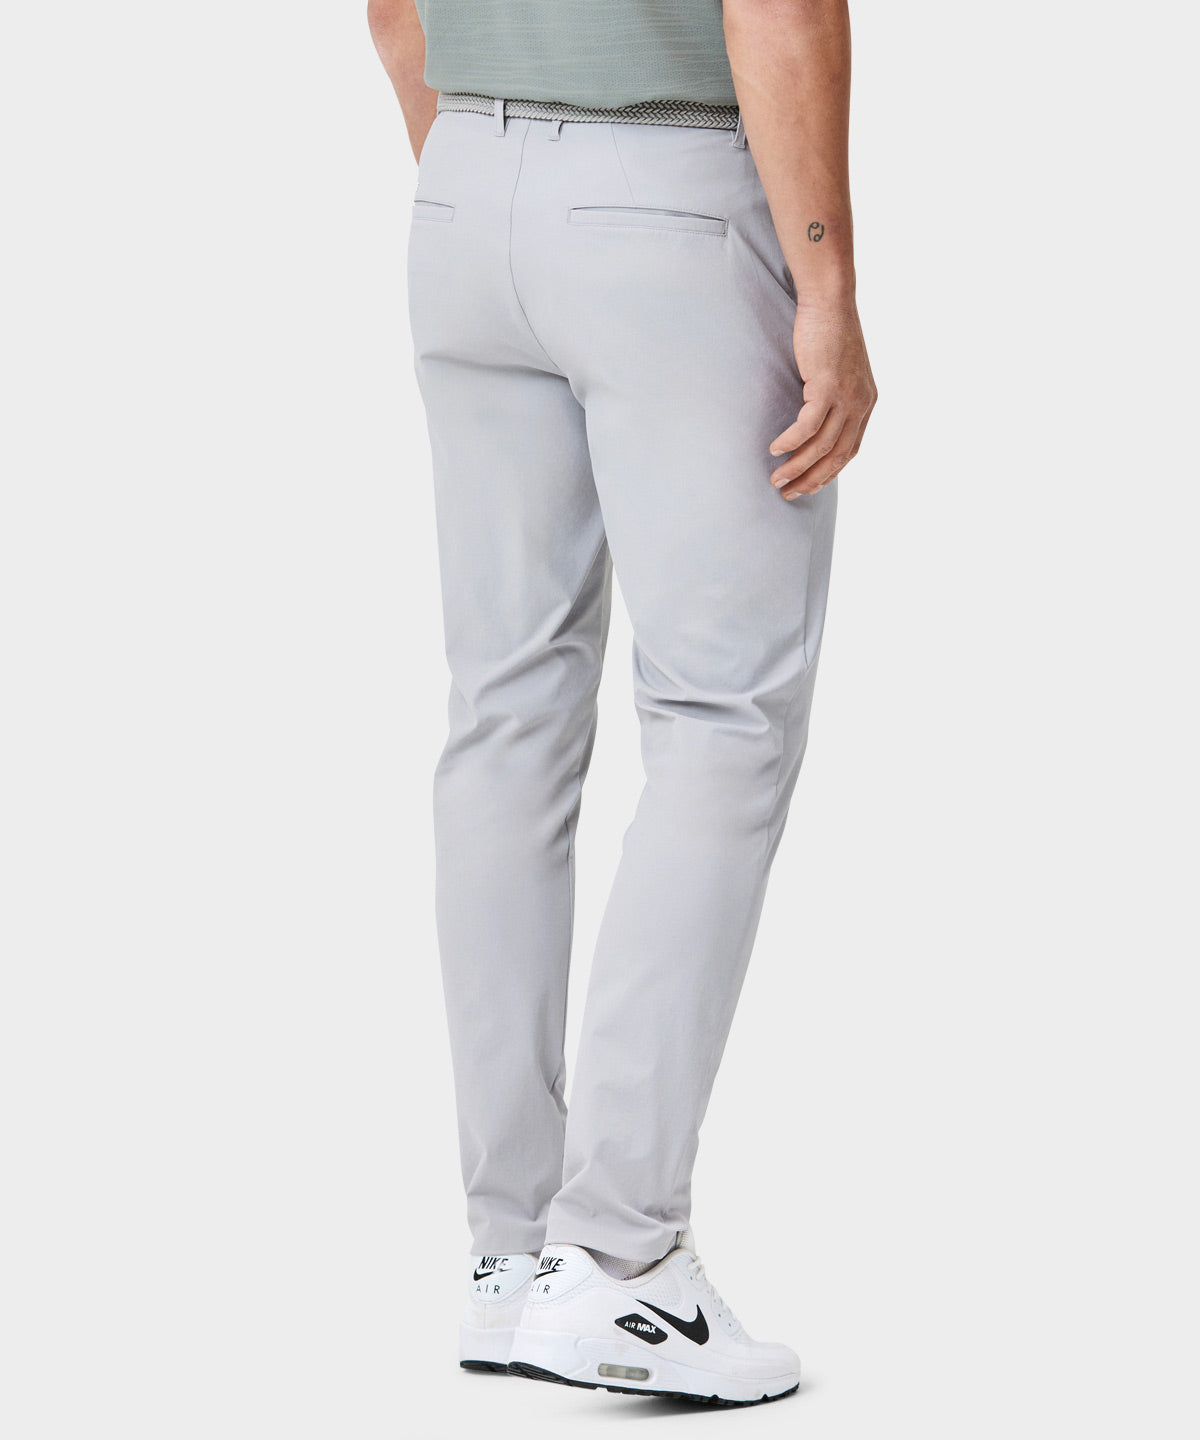 Light Gray Lightweight Trouser